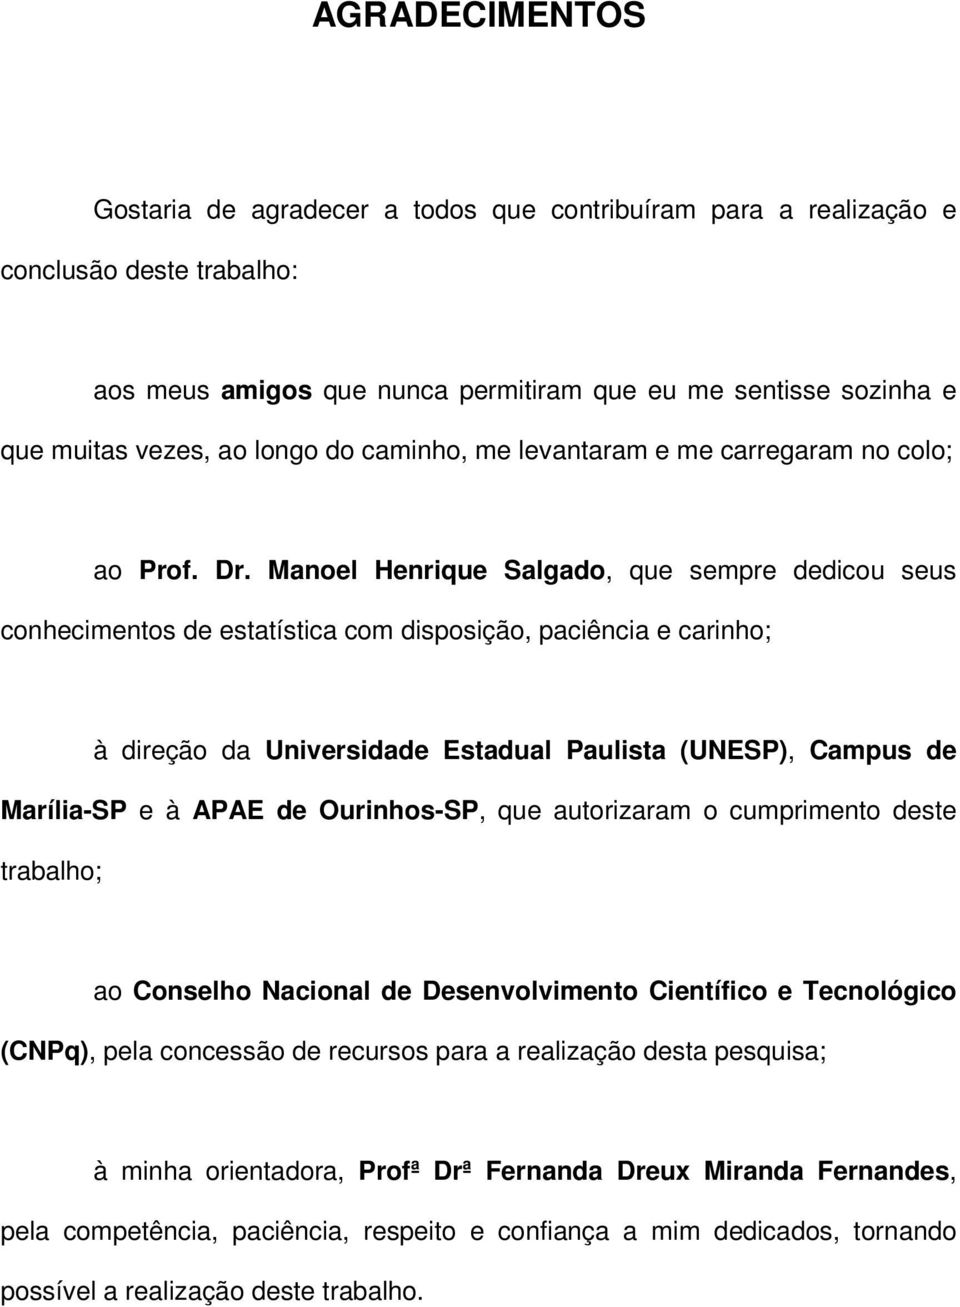 Manoel Henrique Salgado, que sempre dedicou seus conhecimentos de estatística com disposição, paciência e carinho; à direção da Universidade Estadual Paulista (UNESP), Campus de Marília-SP e à APAE